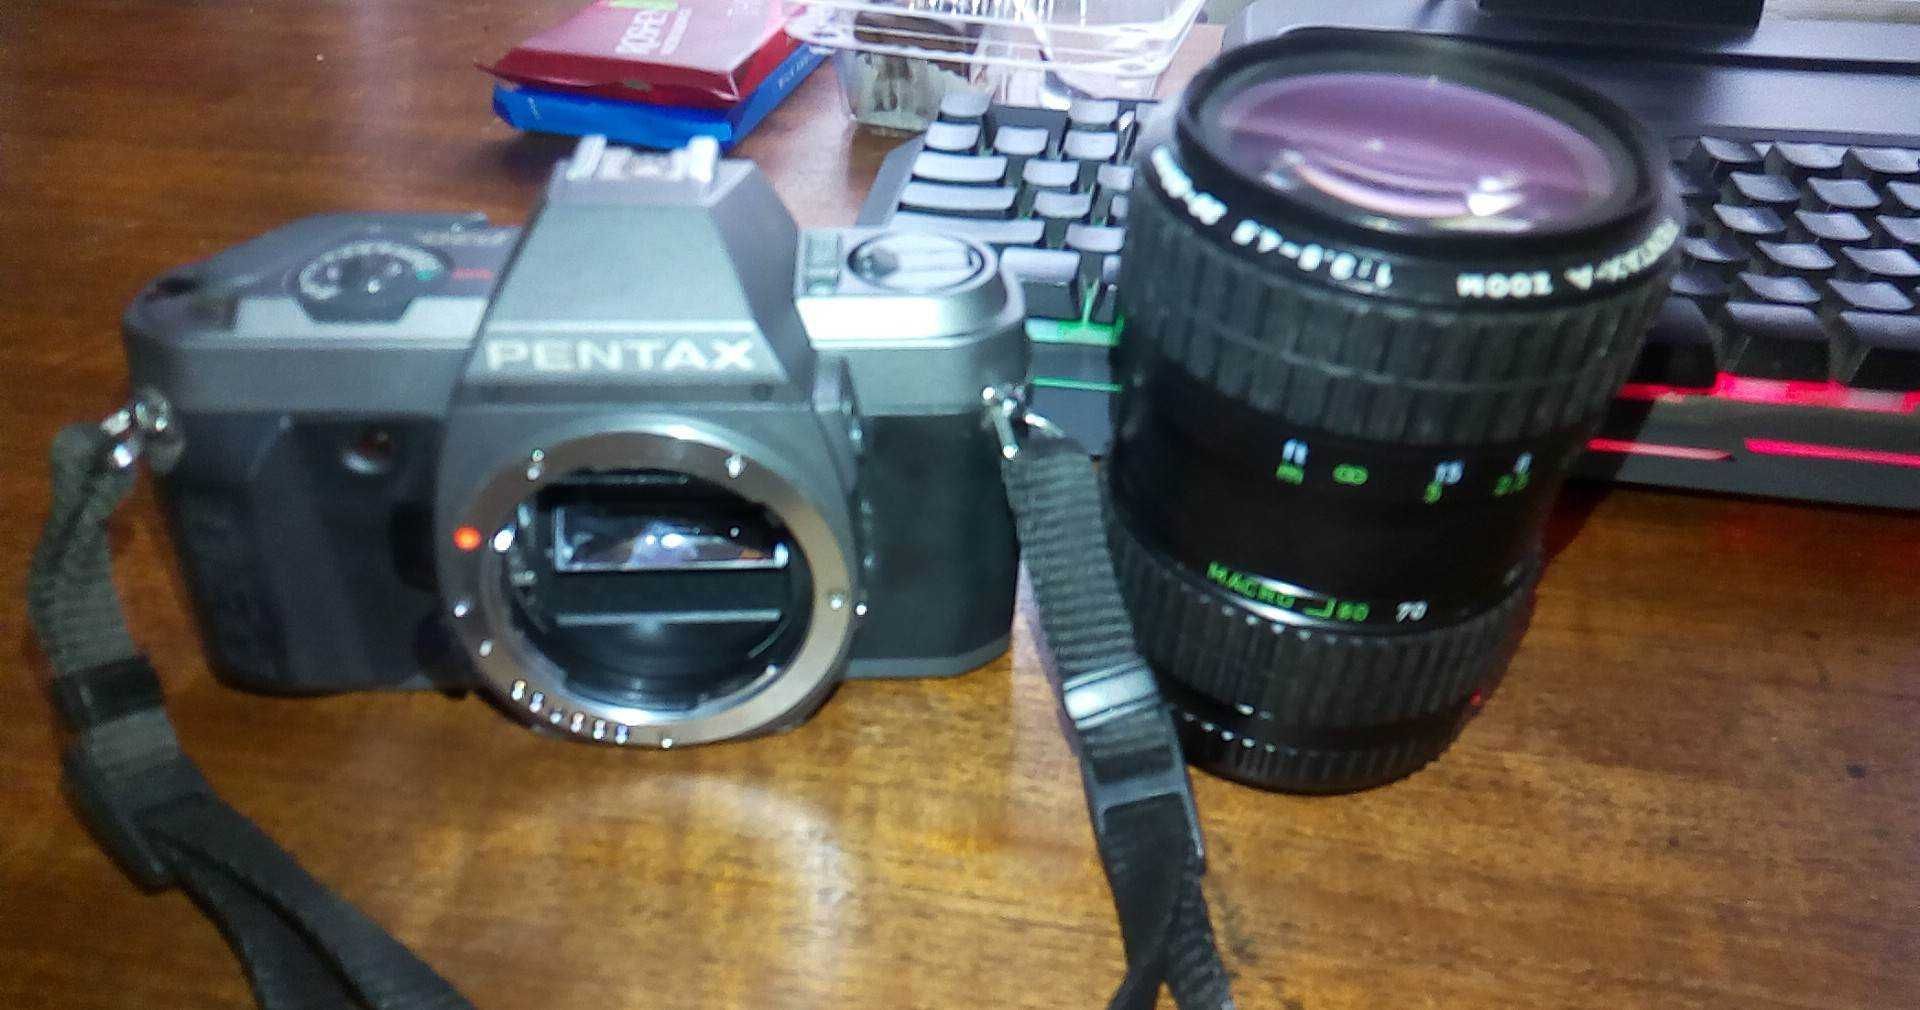 Camera Foto Pentax p30T cu Lentila Pentax-a Zoom 1:3.5`4.5 28-80mm